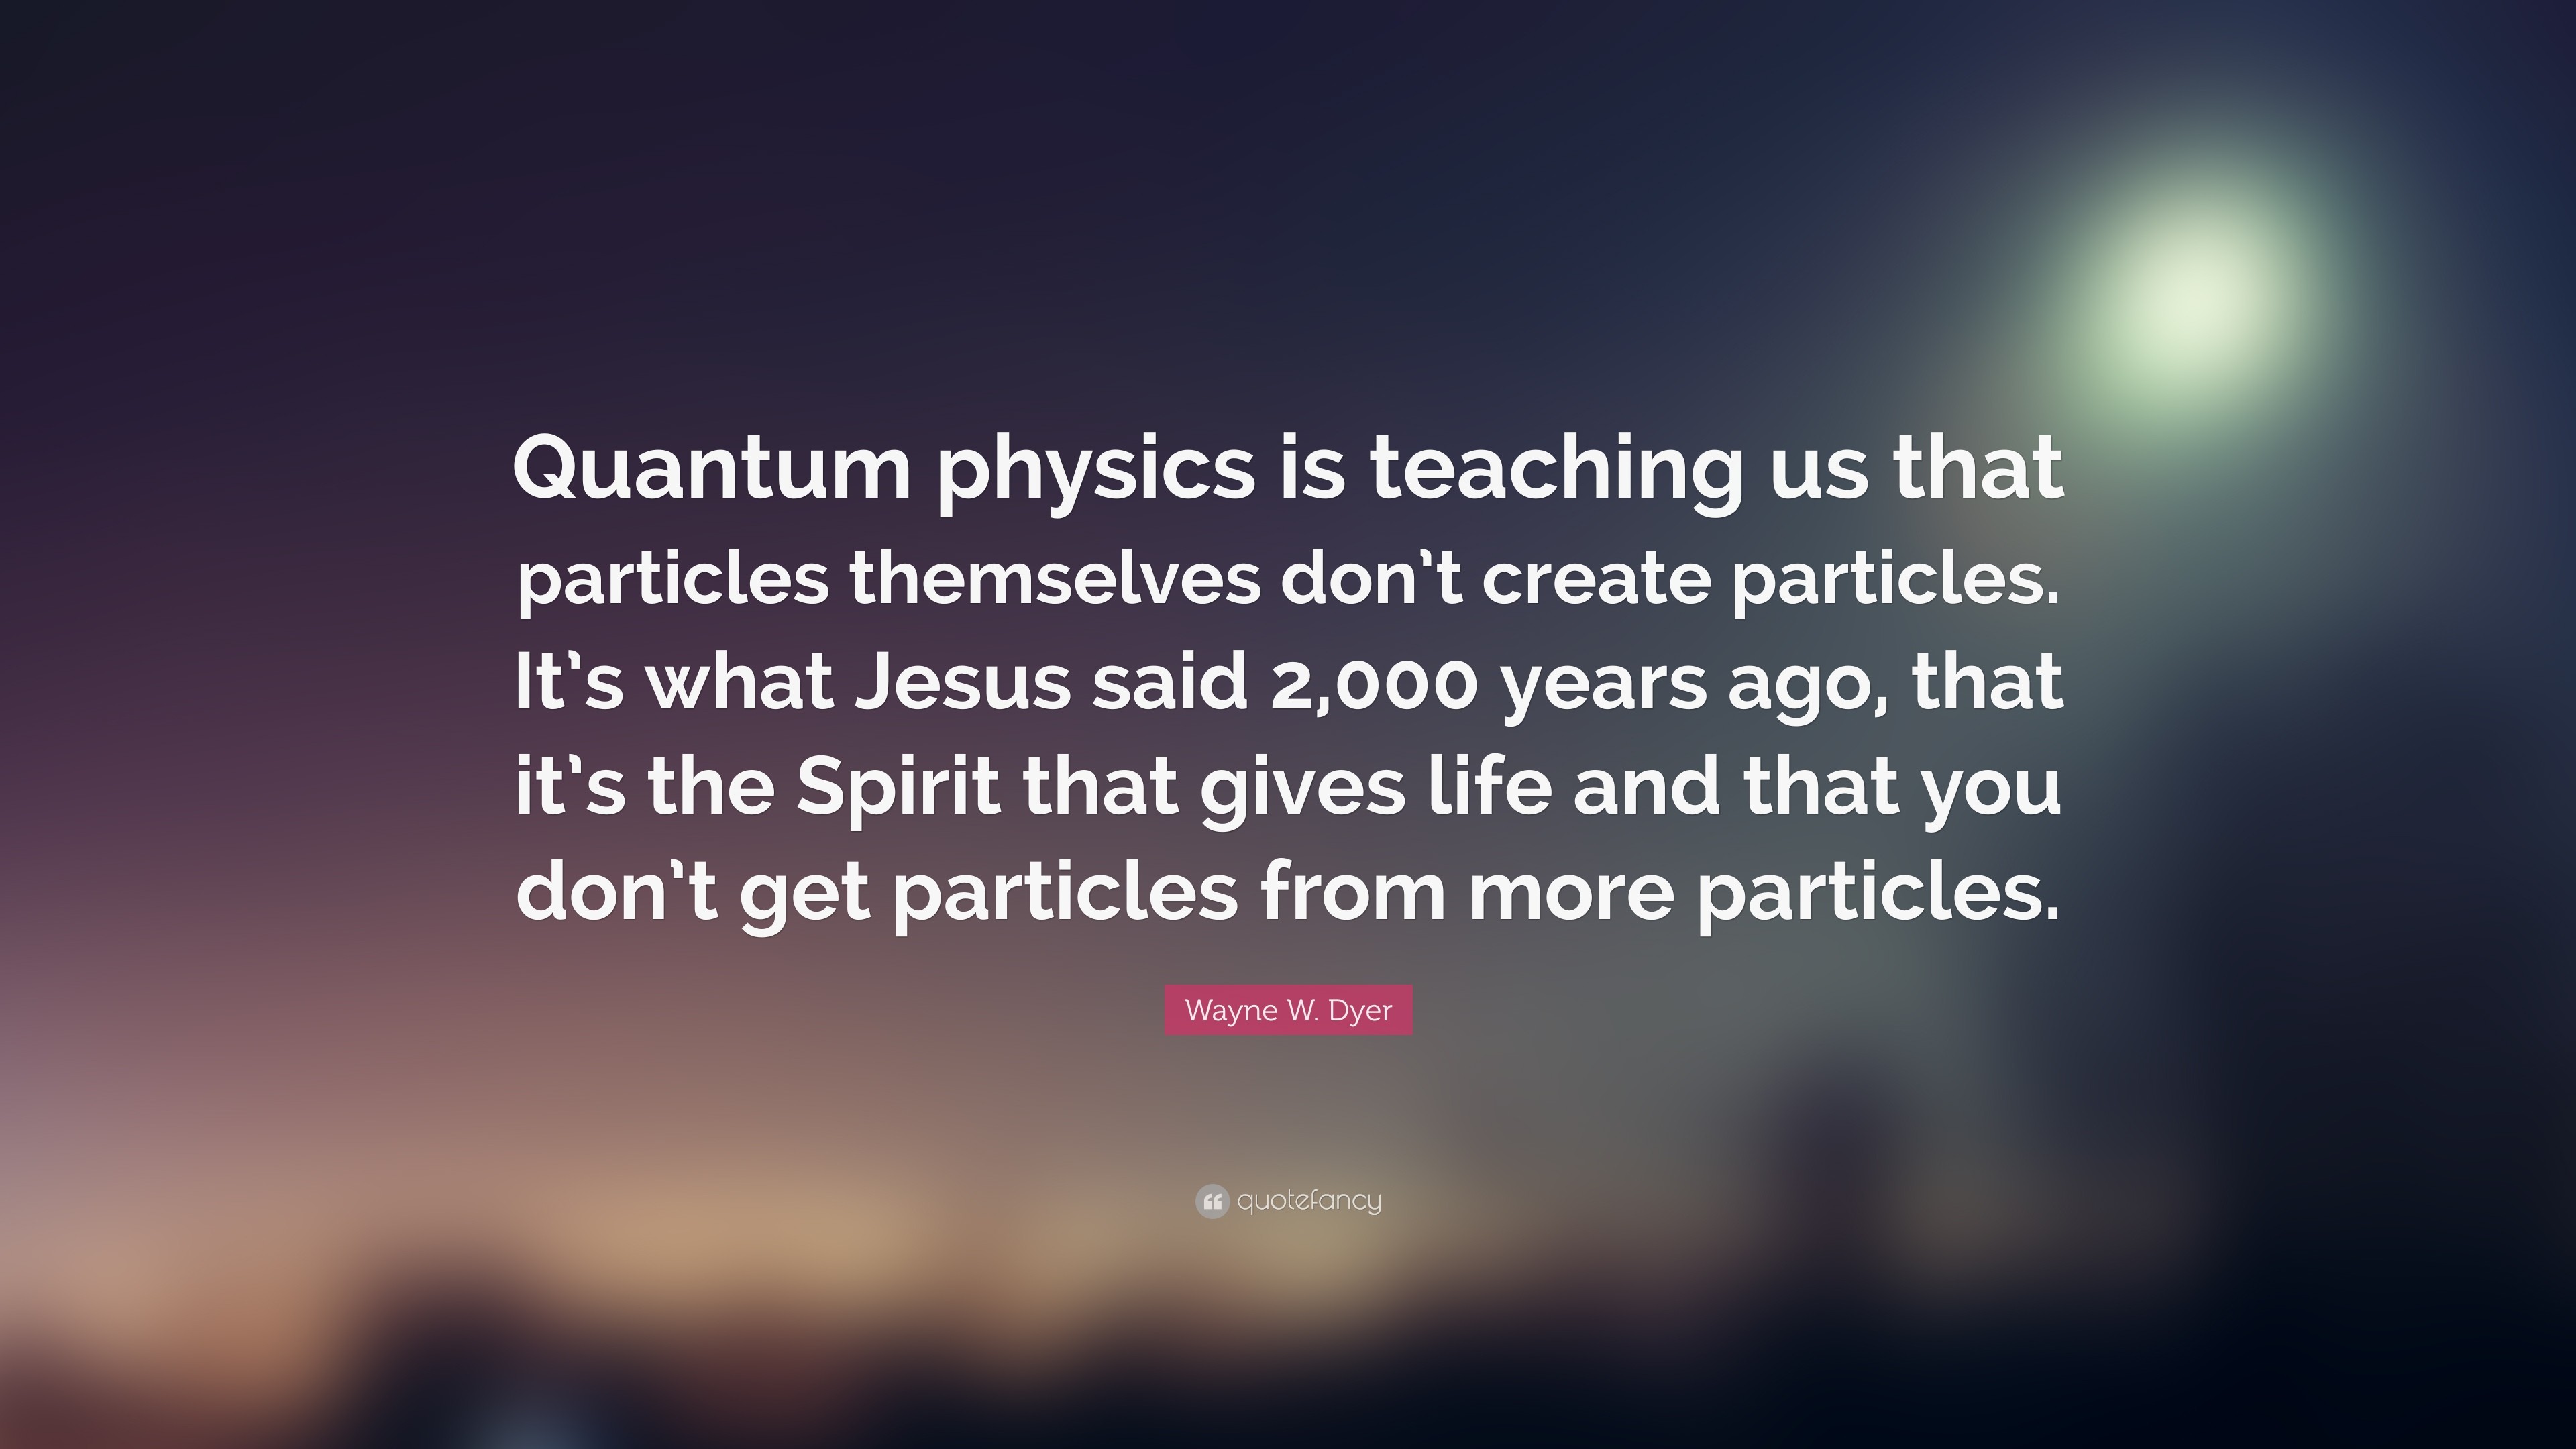 Quantum Physics